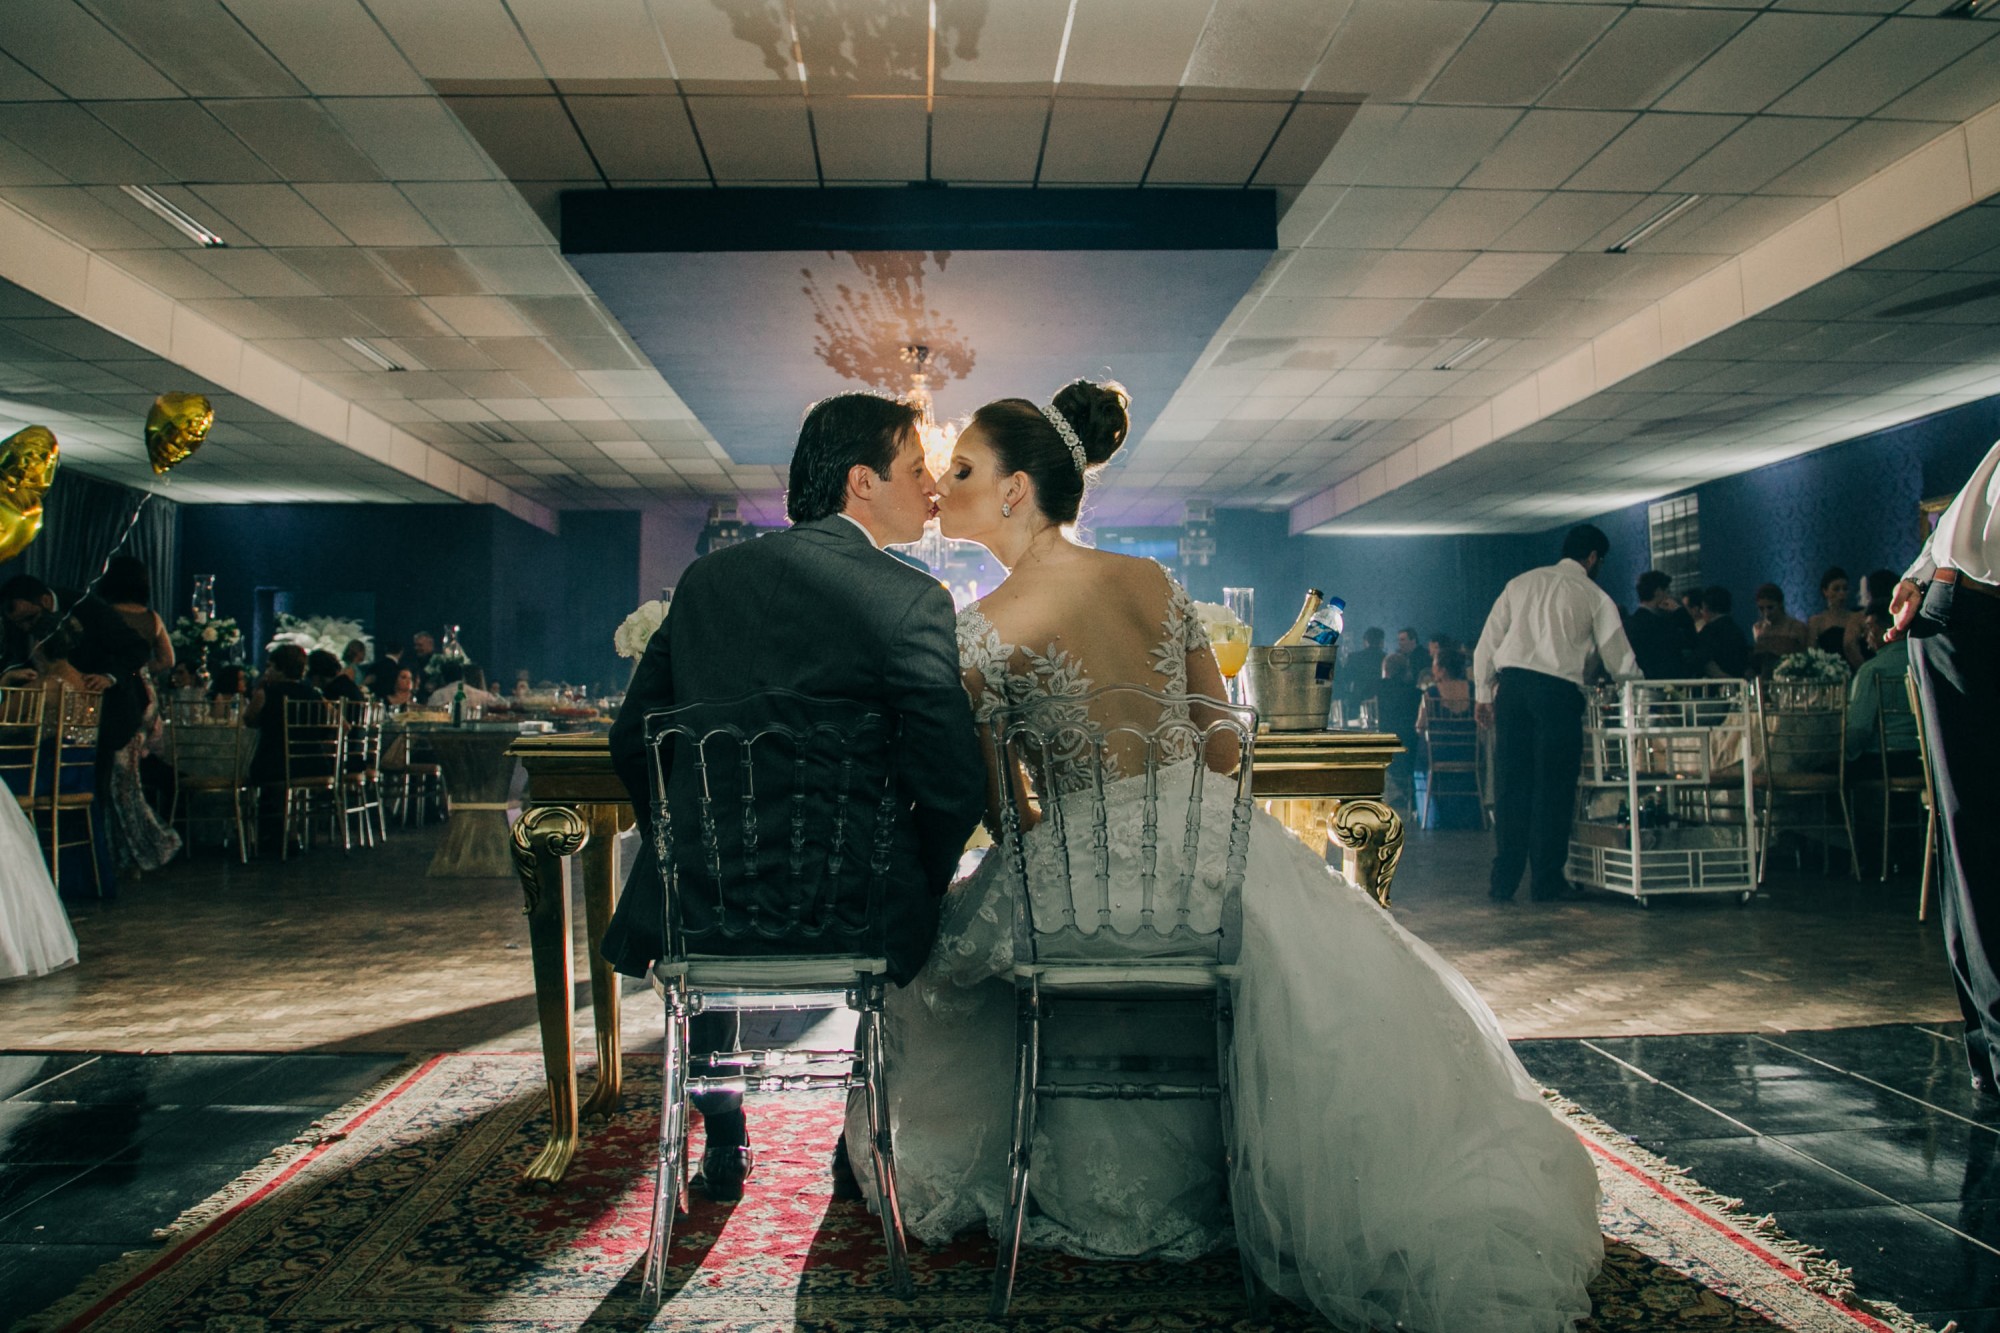 Casamento Anderson e Juliana Fioreli em Iporã Paraná - por Lorran Souza e Léia Sotile - Fotografos de casamentos - JA-2713